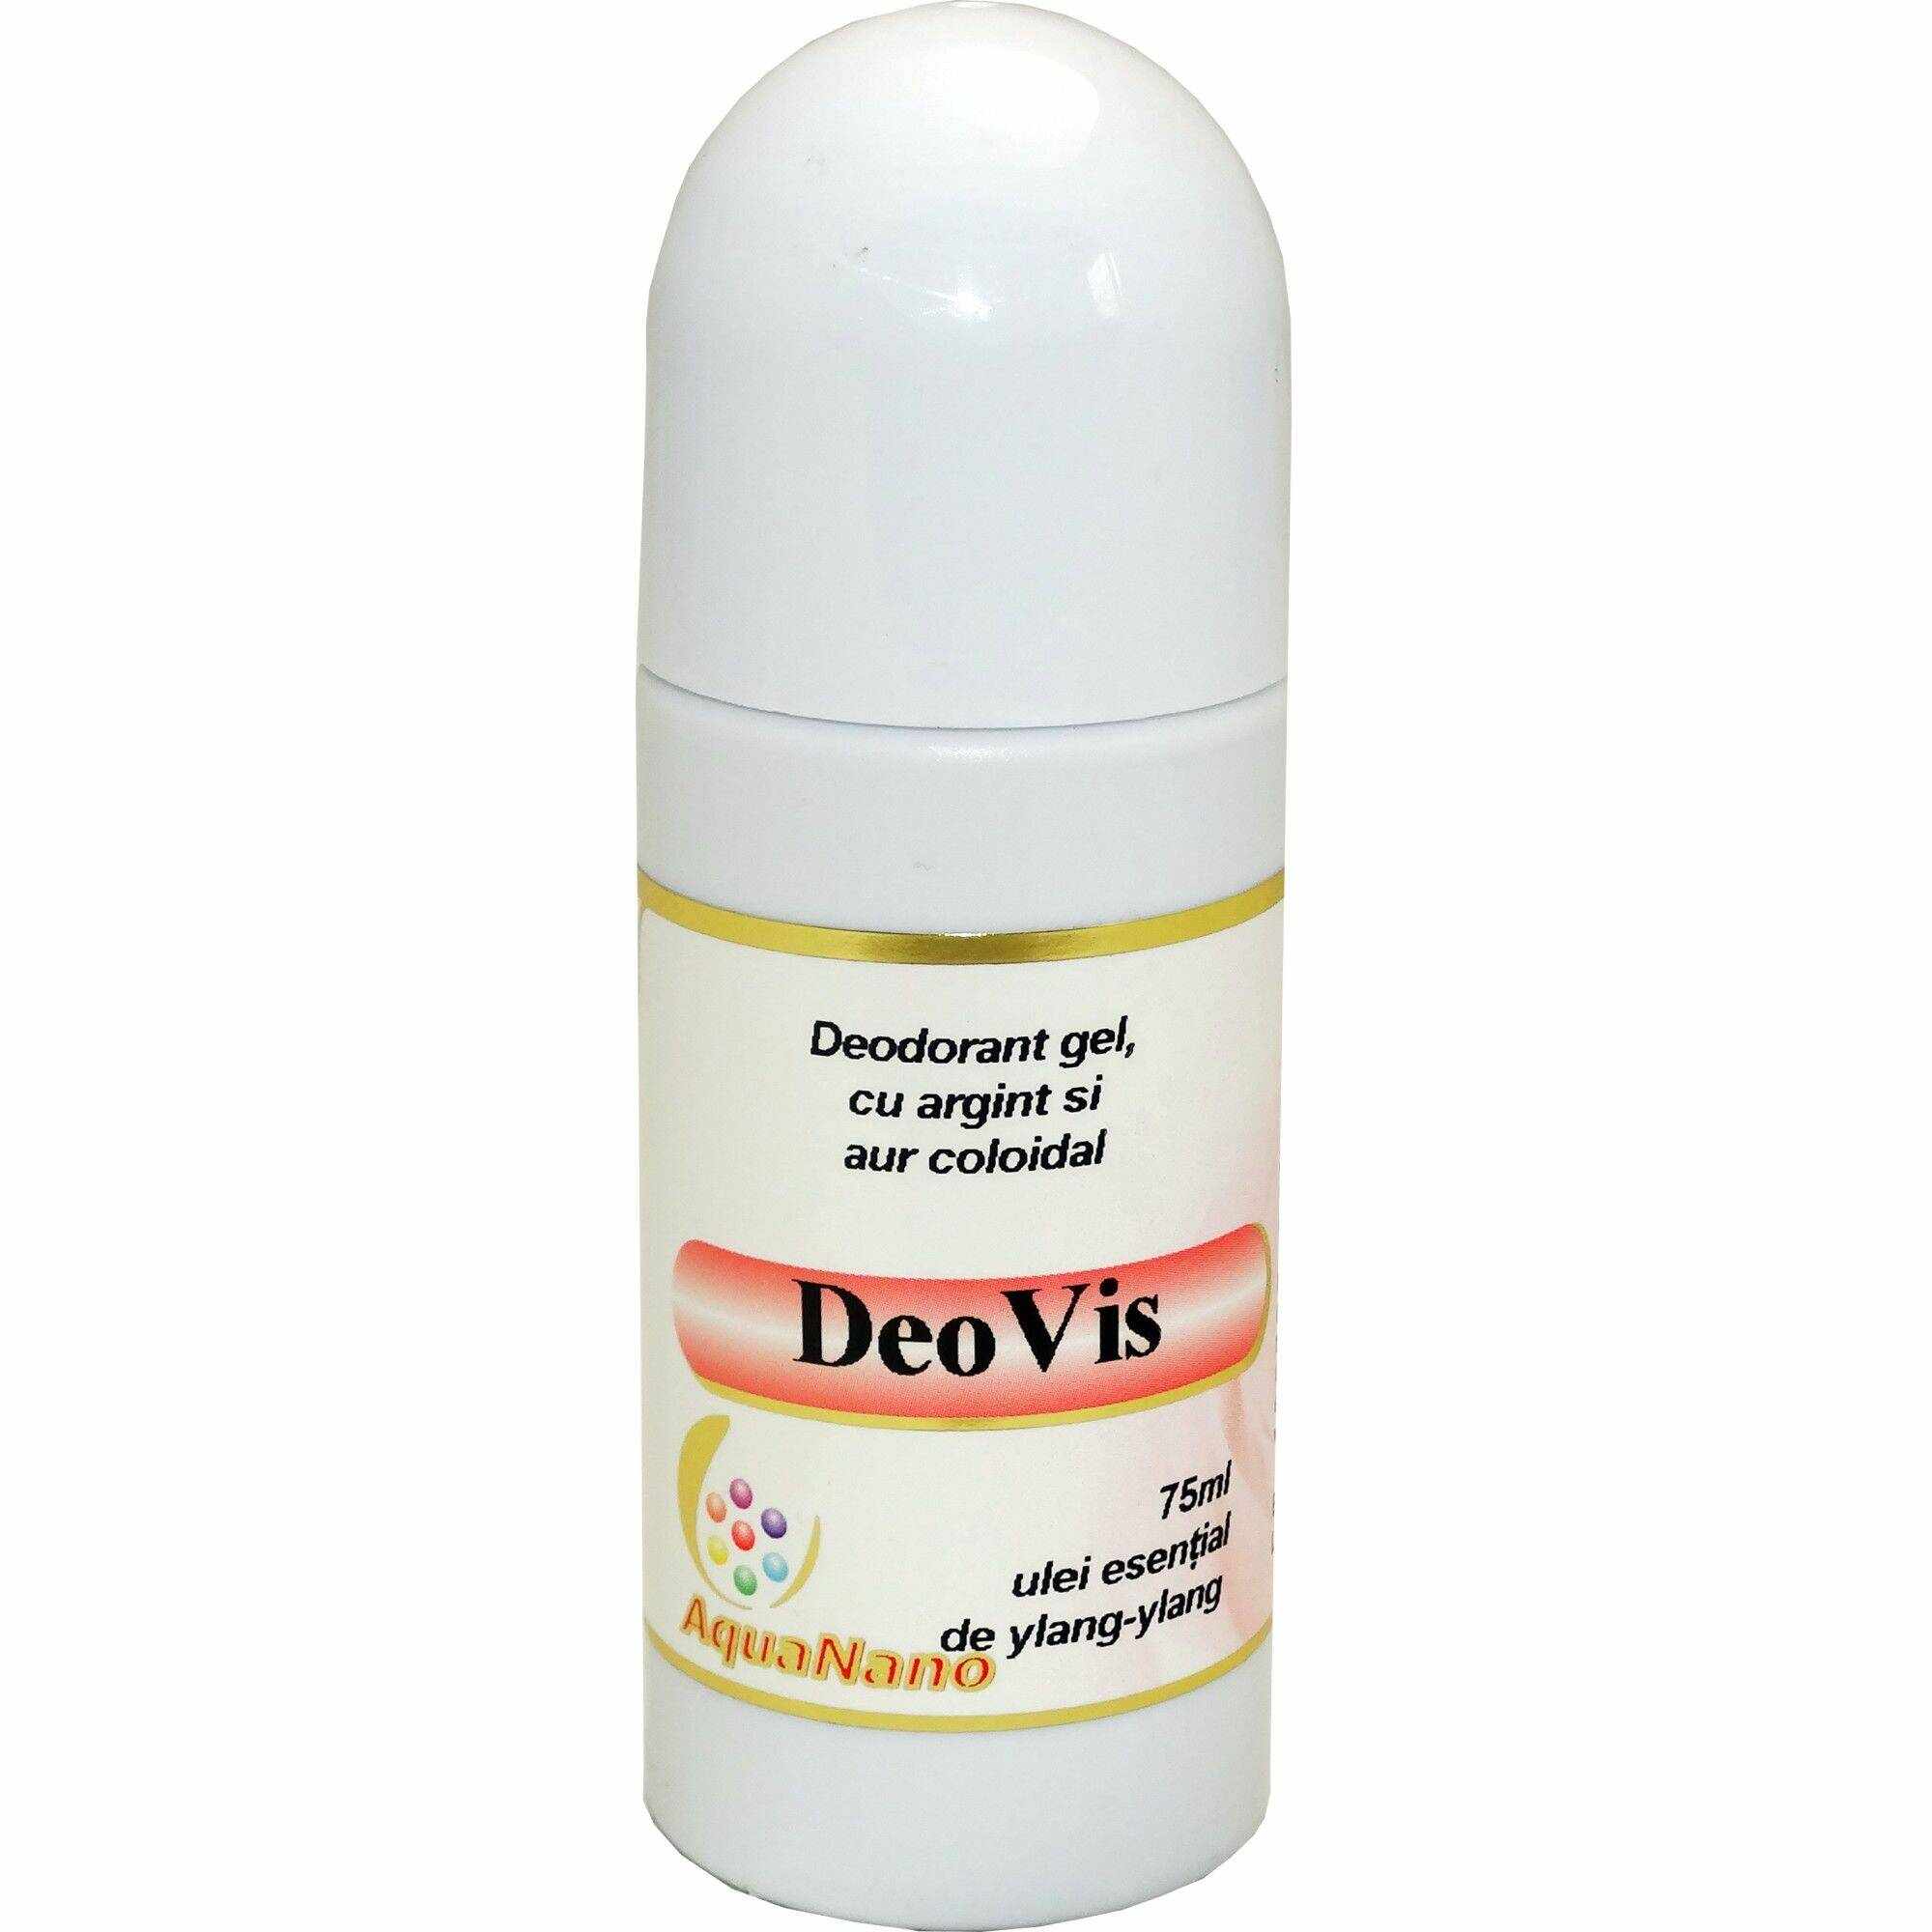 Deodorant gel roll-on bio DeoVis 75ml cu argint si aur coloidal AquaNano lavanda